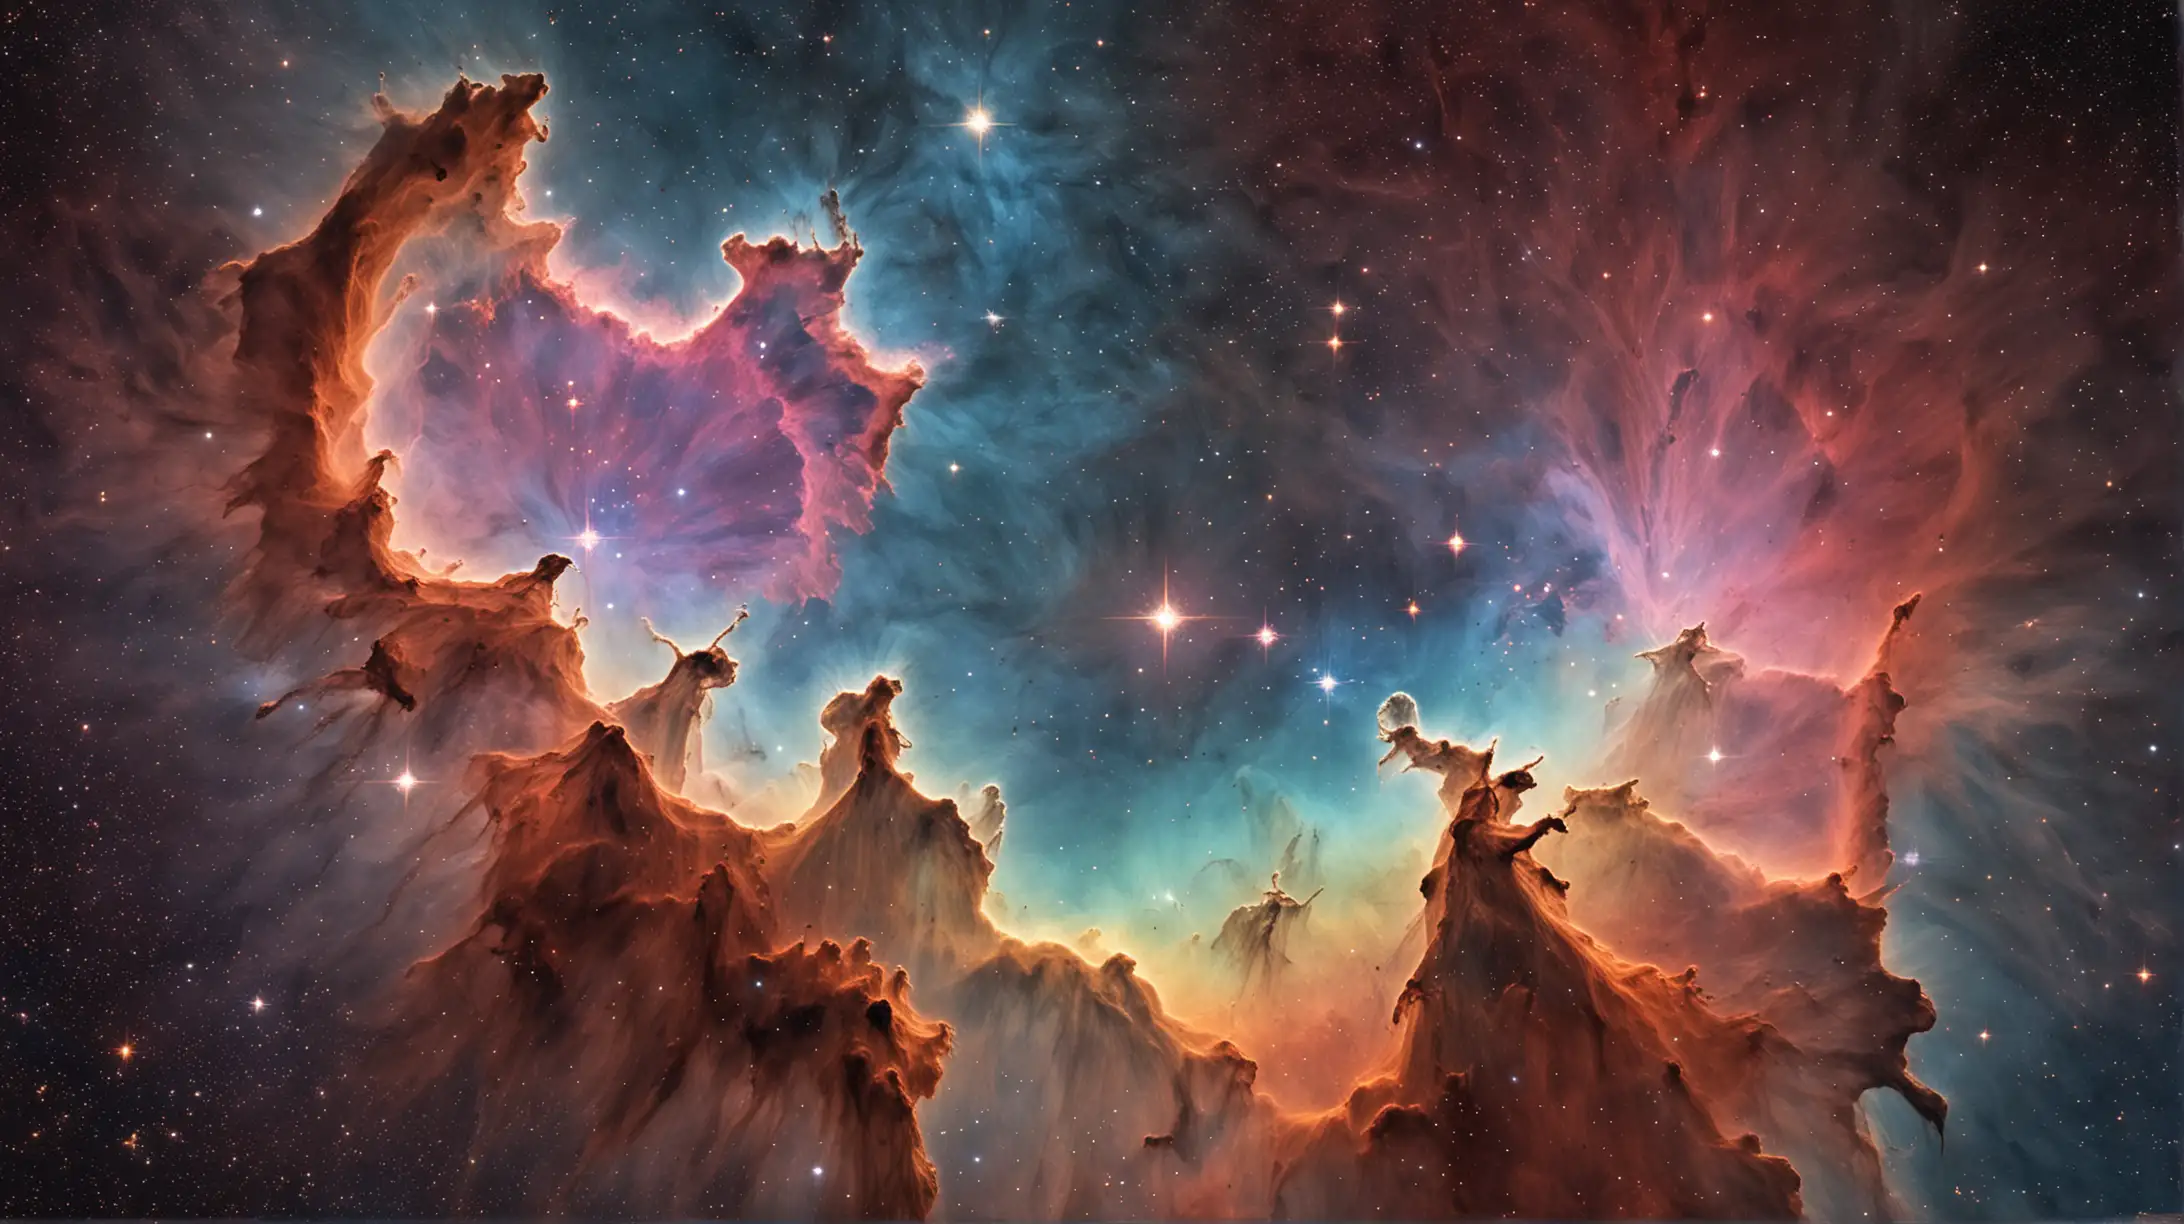 The Omega Nebula
